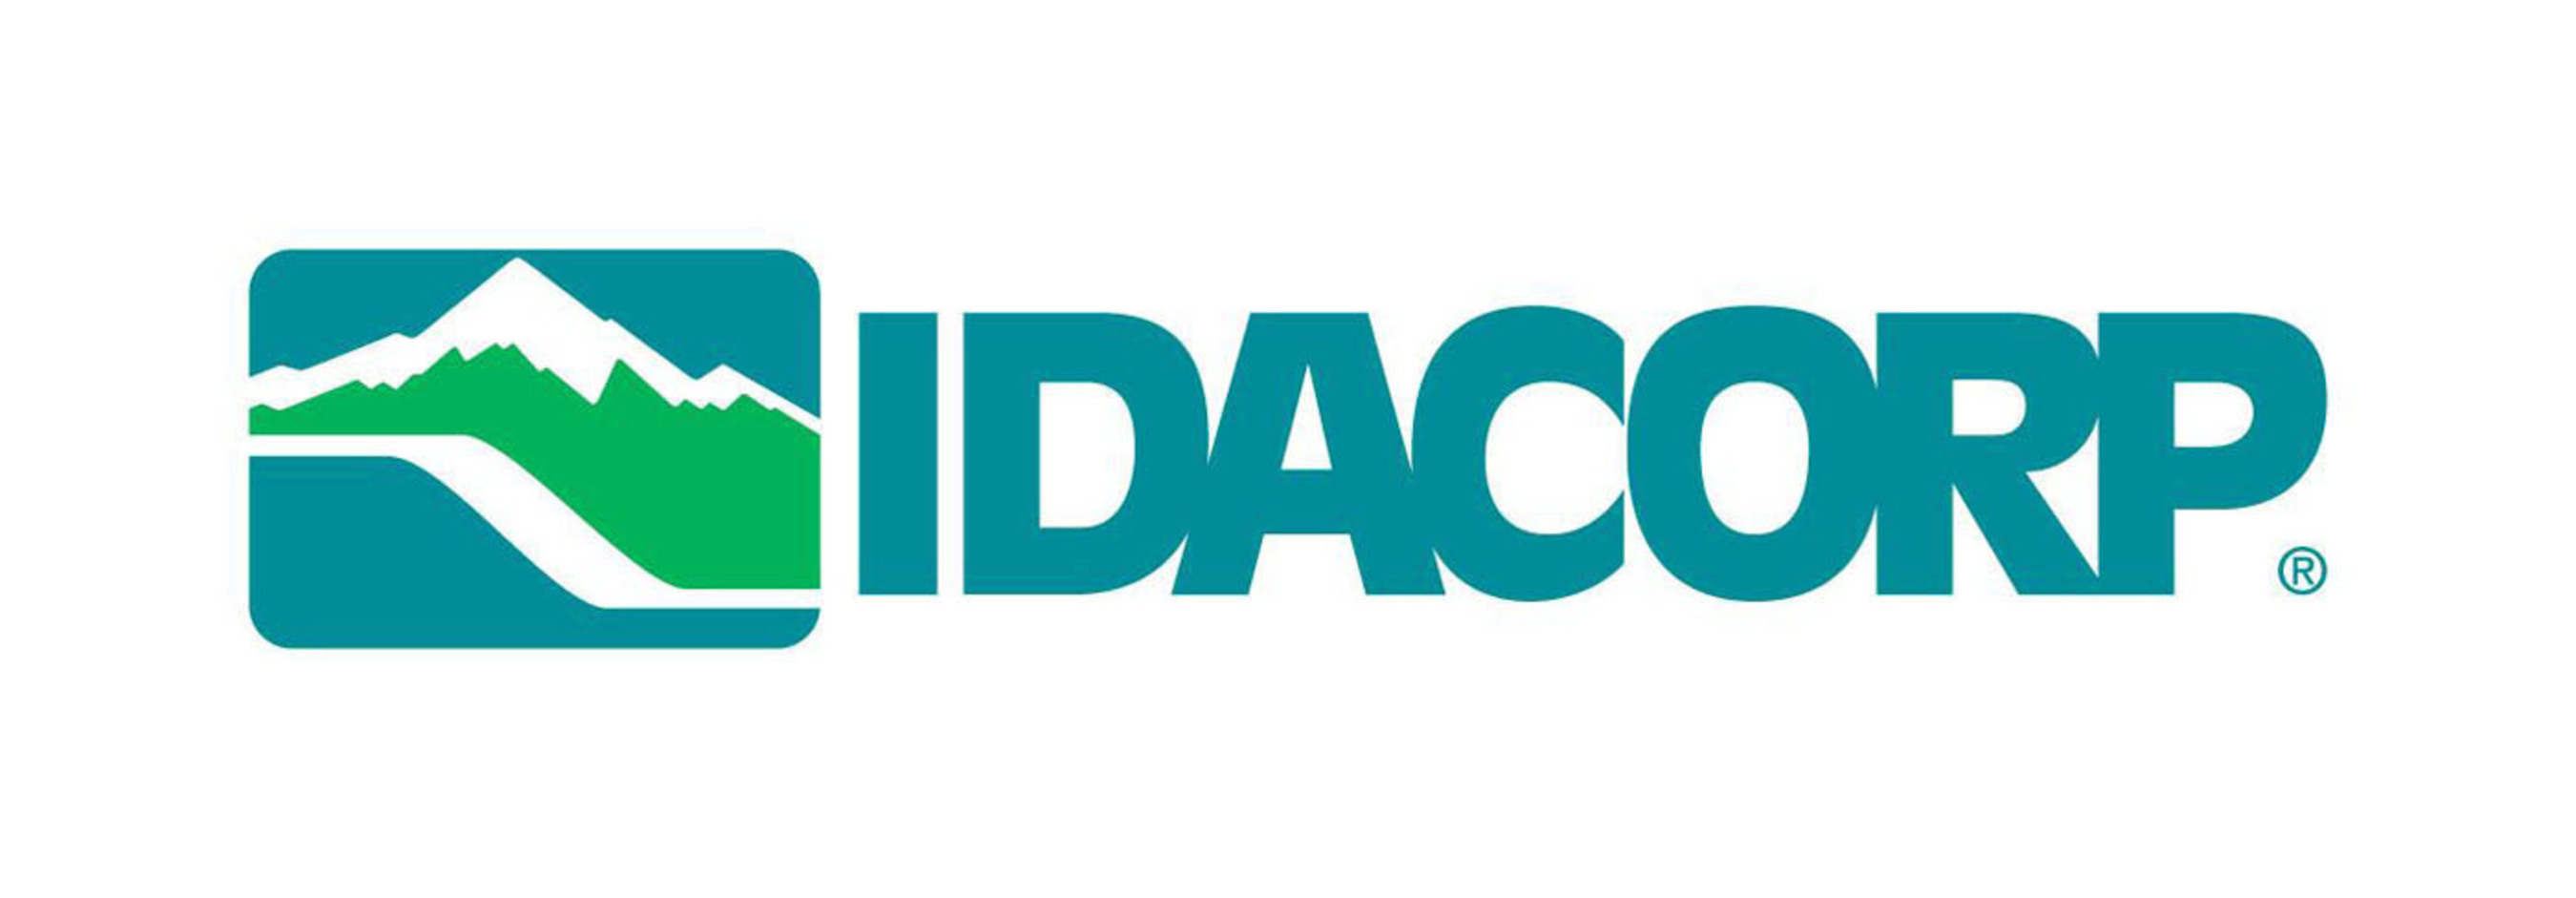 IDACORP, Inc. logo.